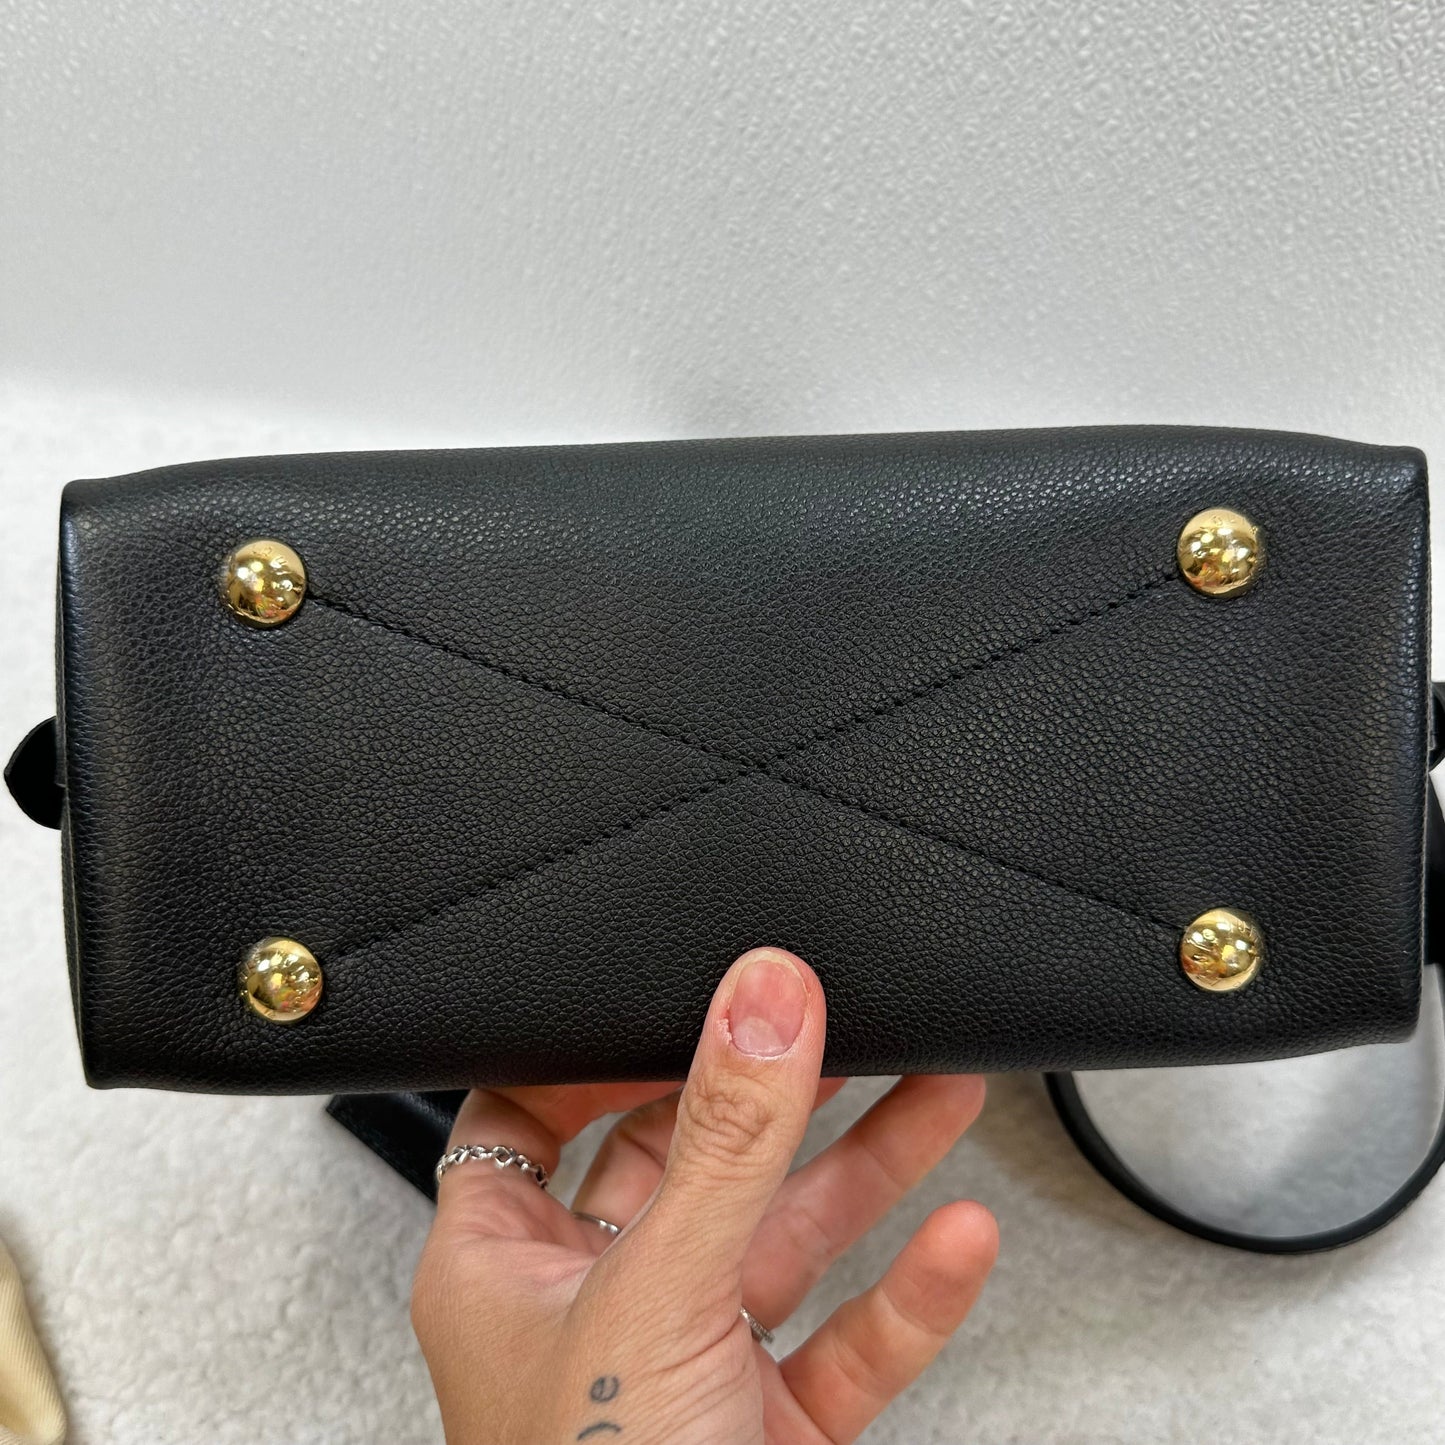 Handbag Designer Louis Vuitton, Size Small